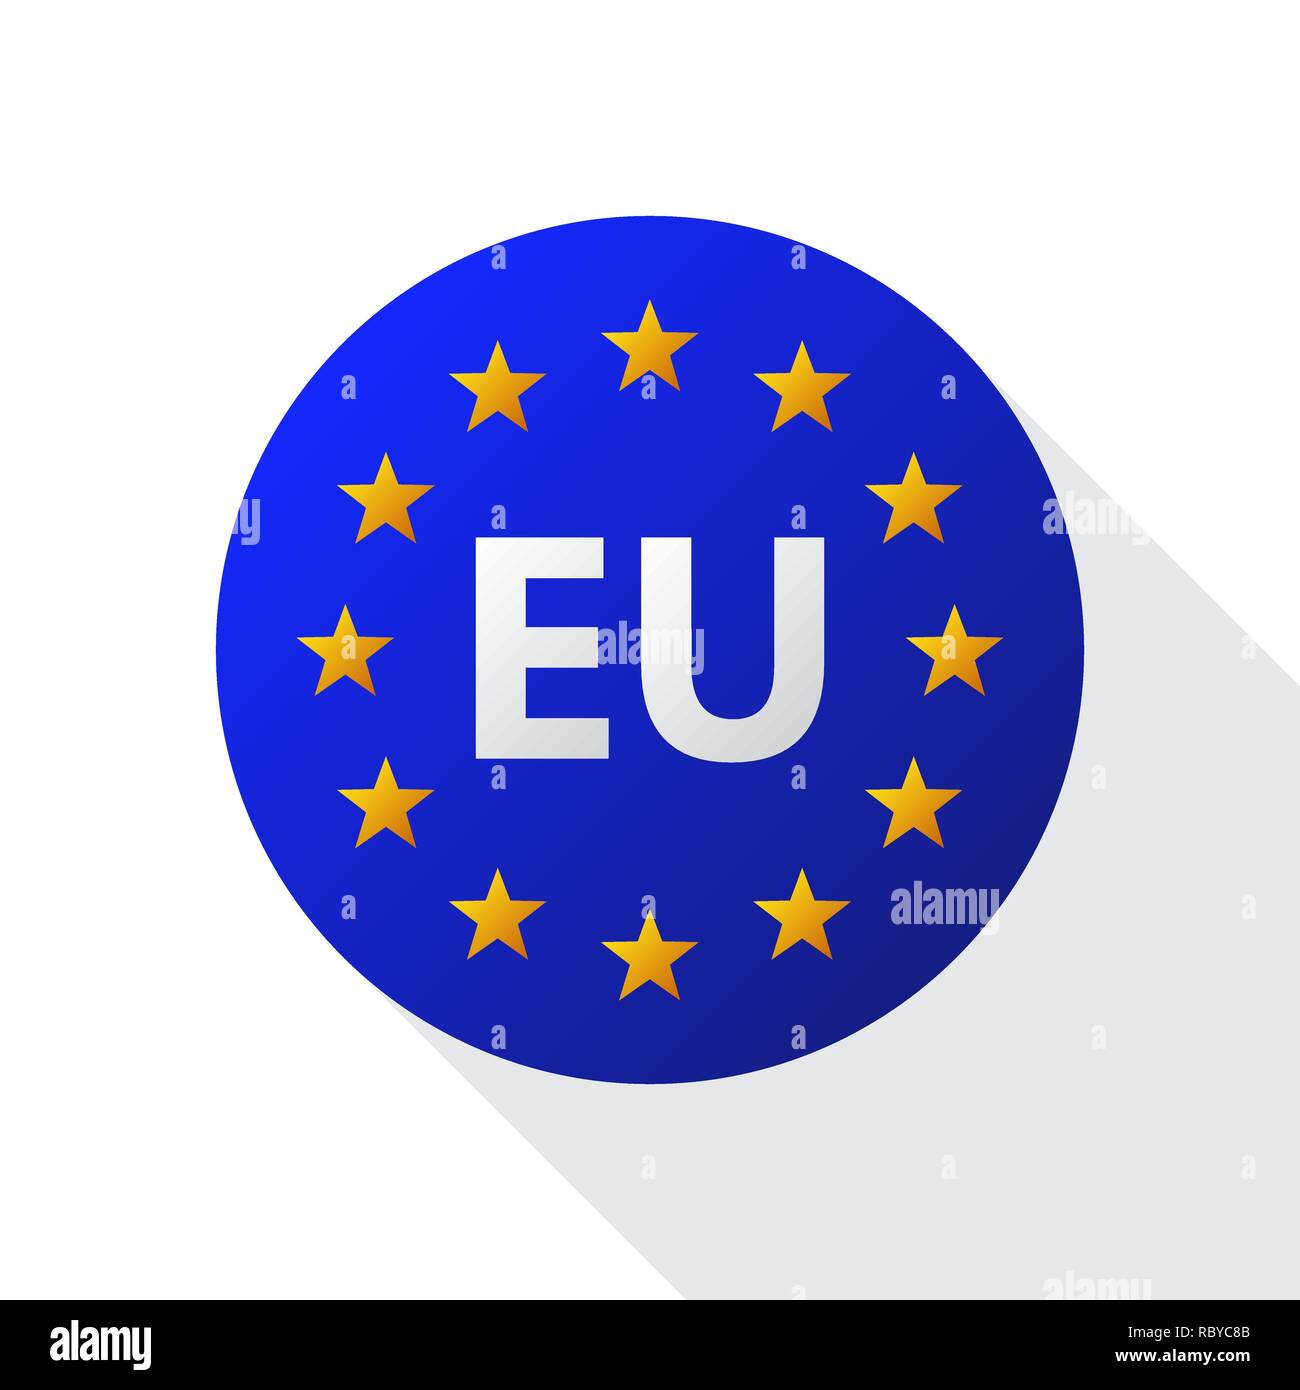 Logo de l'Union européenne. Vector illustration. Drapeau de l'UE avec l'icône étoile ronde Illustration de Vecteur